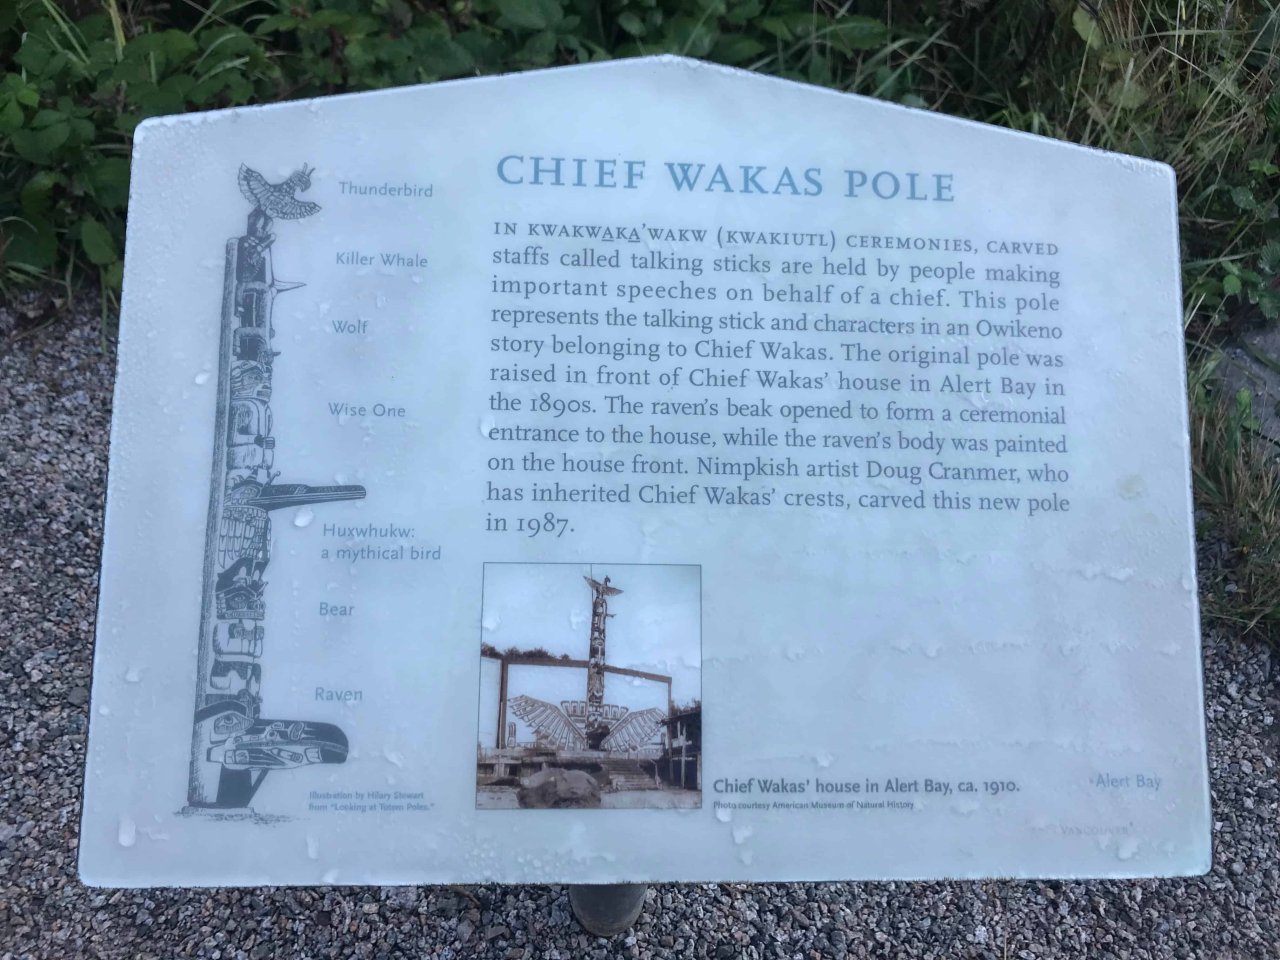 Chief Wakas Totem Pole Plaque
Source: VHF Files, Jessica Quan